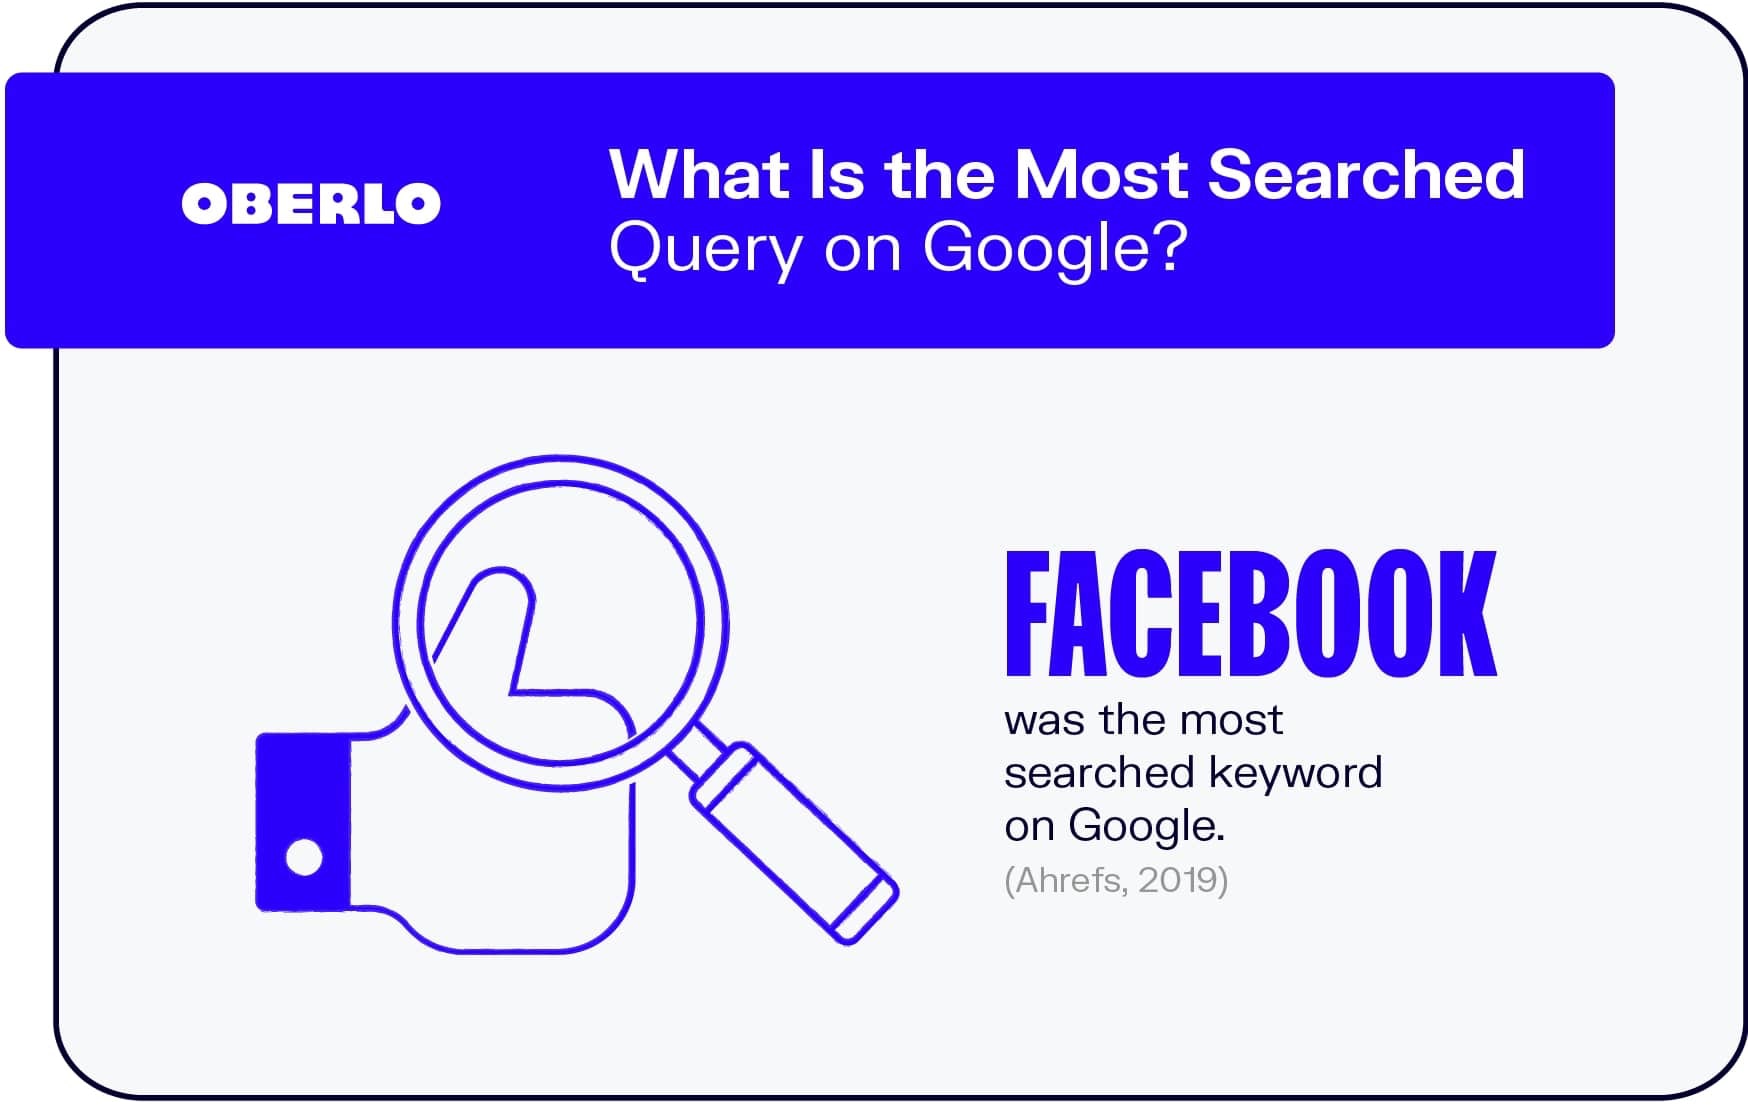 谷歌上搜索次数最多的查询是什么?